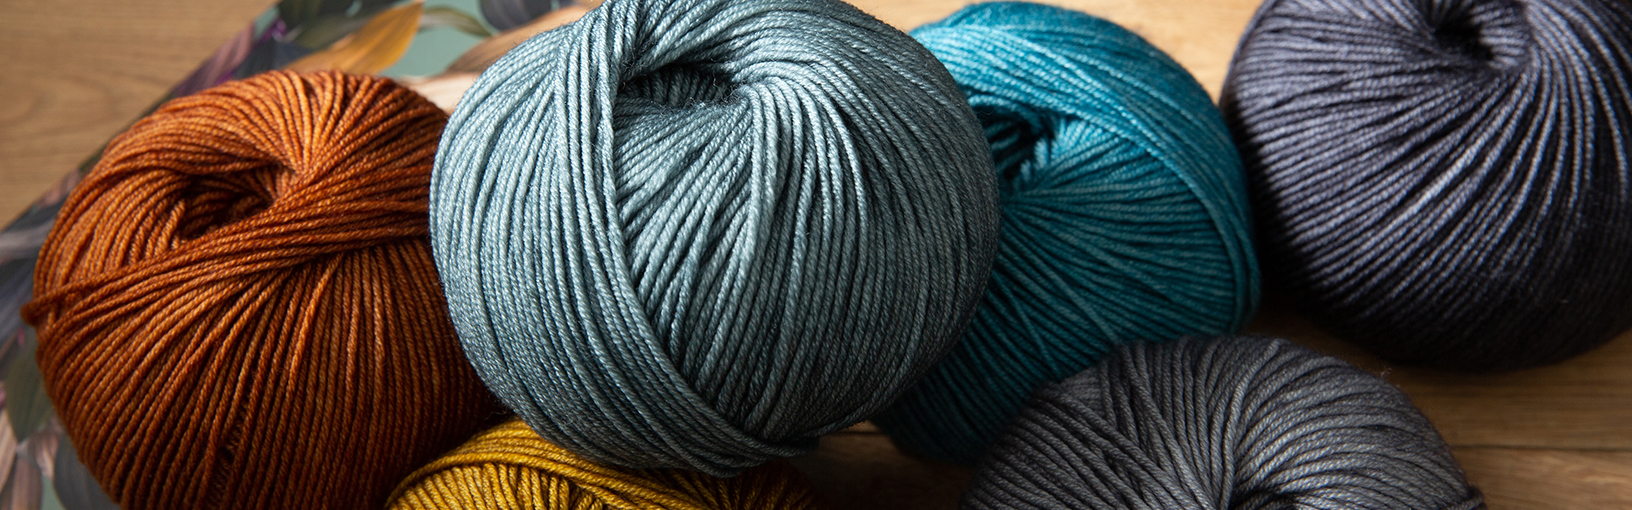 Filati di alta qualità per lavorare a maglia, uncinetto e infeltrimento Filati Lana Grossa | Hand-dyed